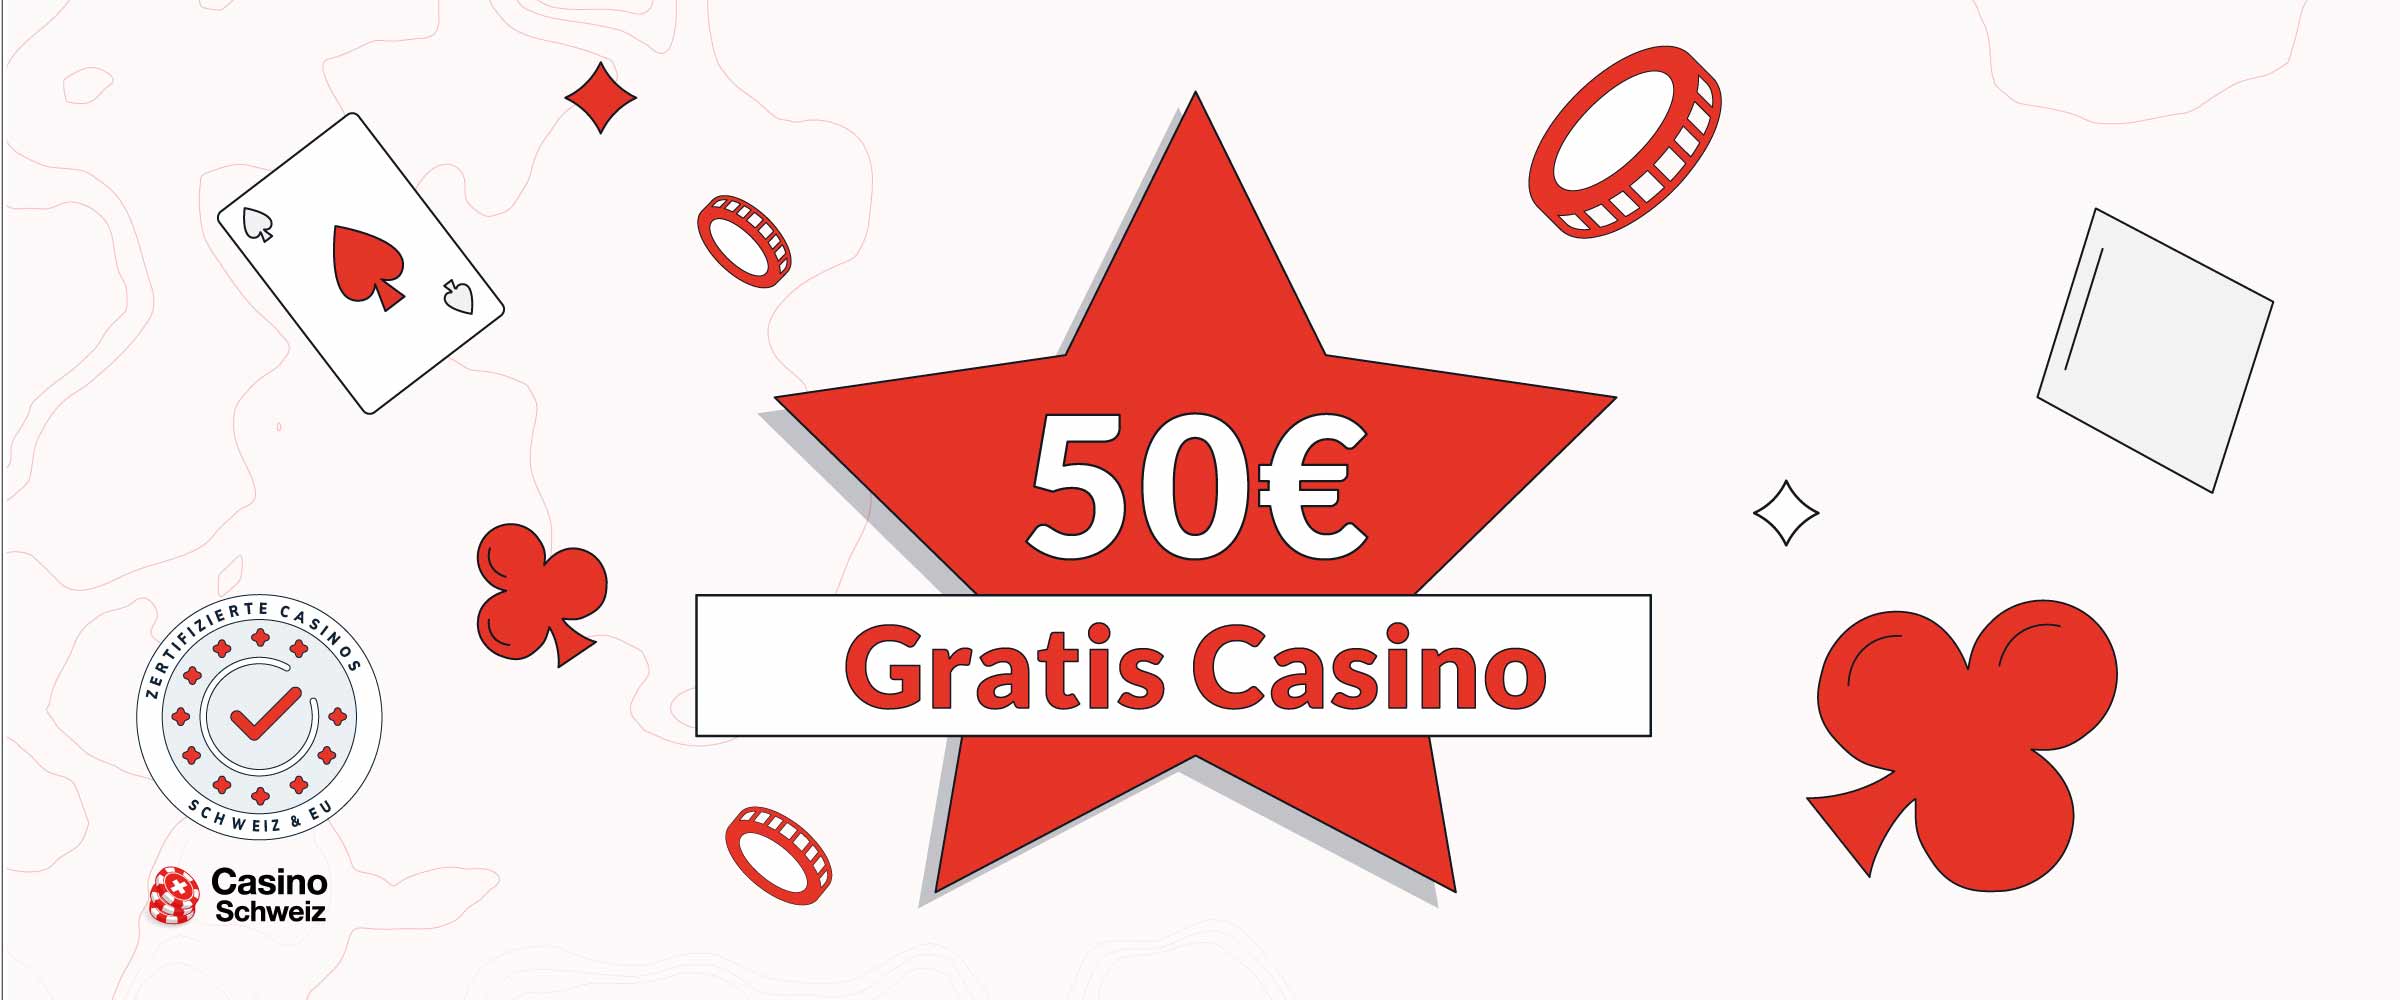 50€ Gratis Casino Bonus